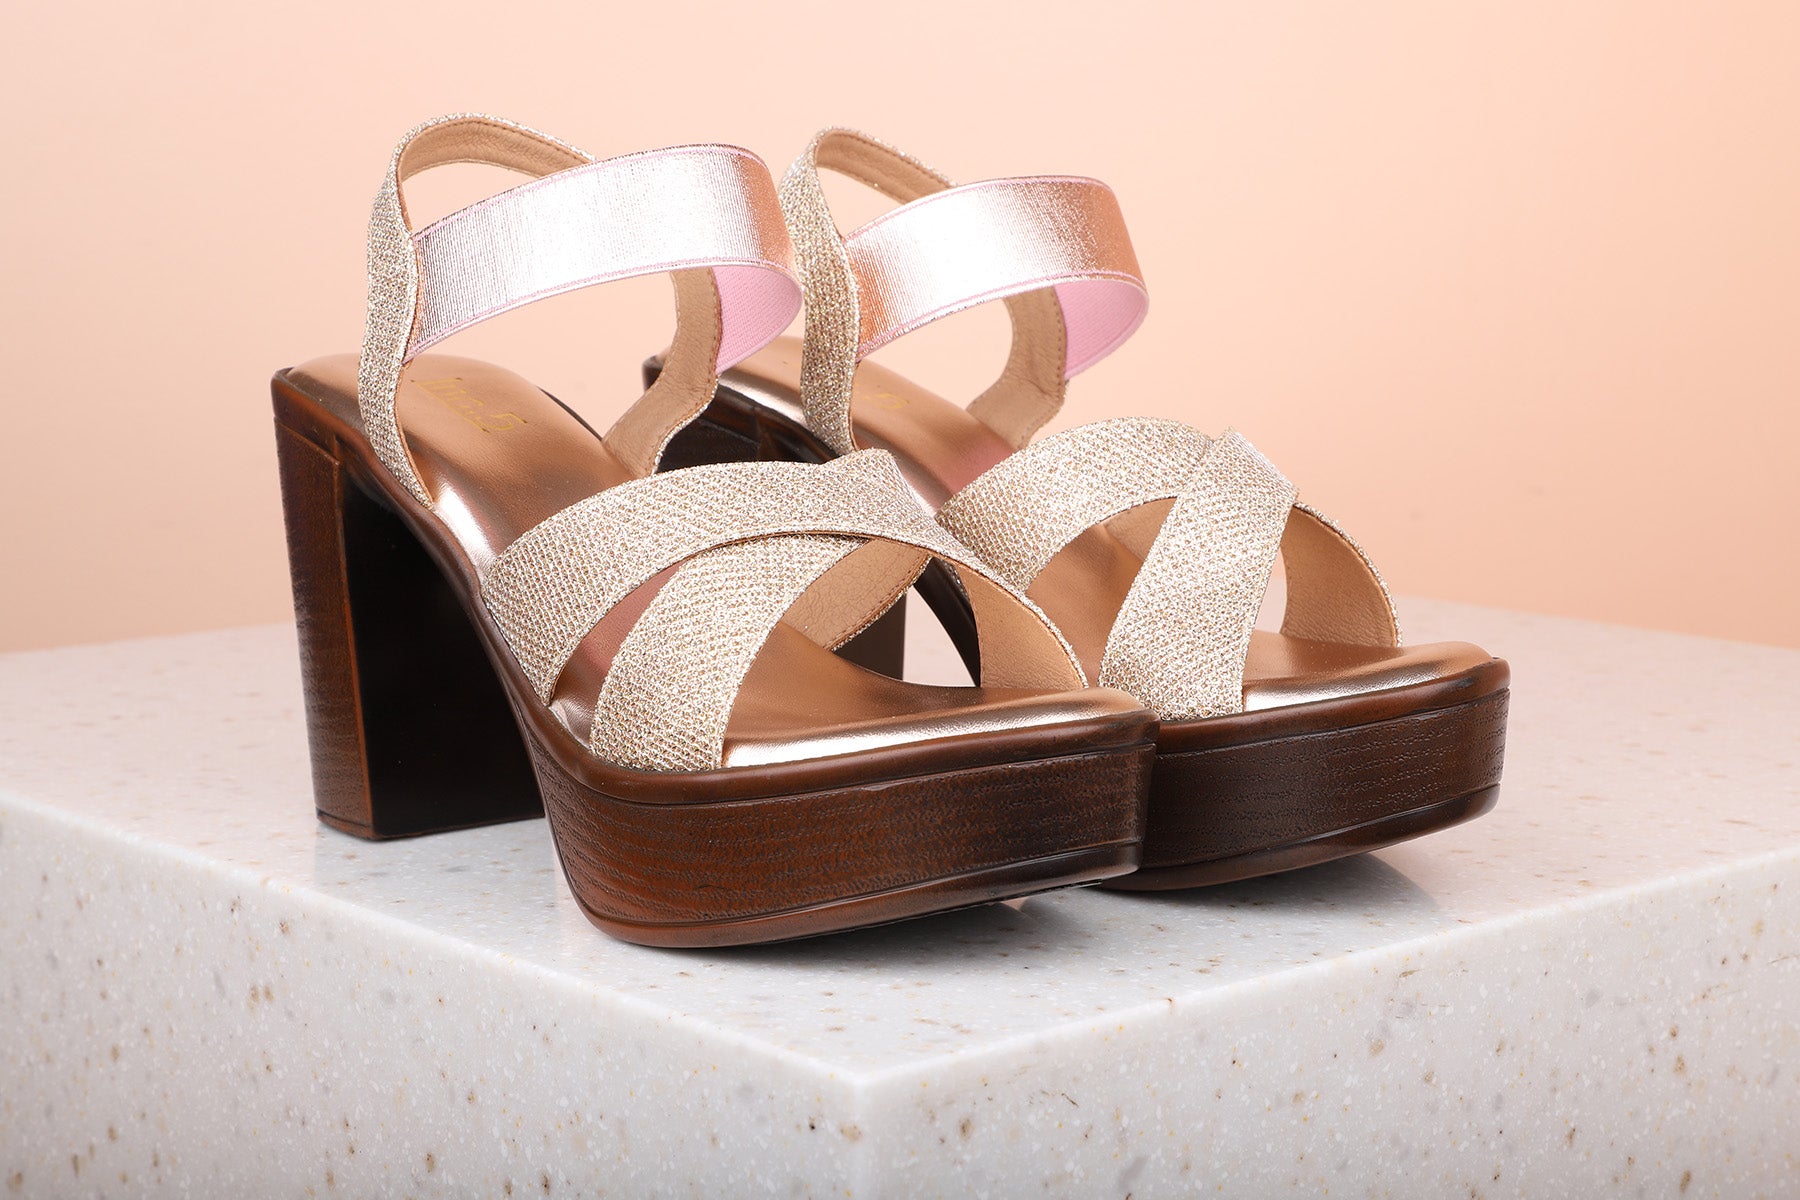 Buy Now Women Purple Ethnic Platform Heels – Inc5 Shoes